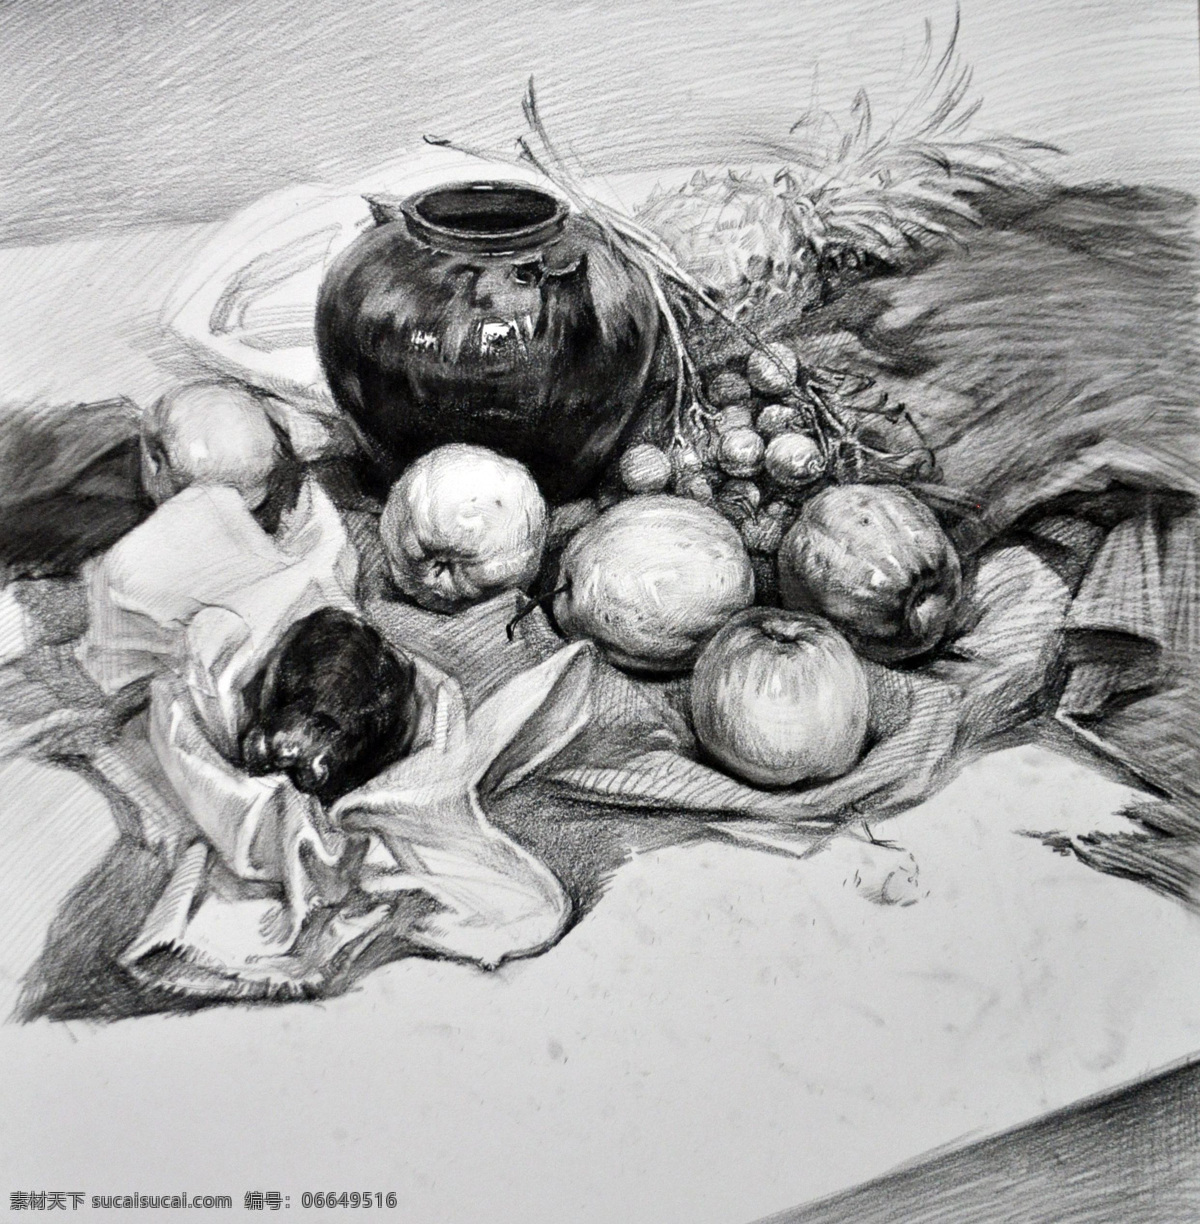 素描 素描静物 静物素描 素描作品 罐子 水果 艺术绘画 文化艺术 绘画书法